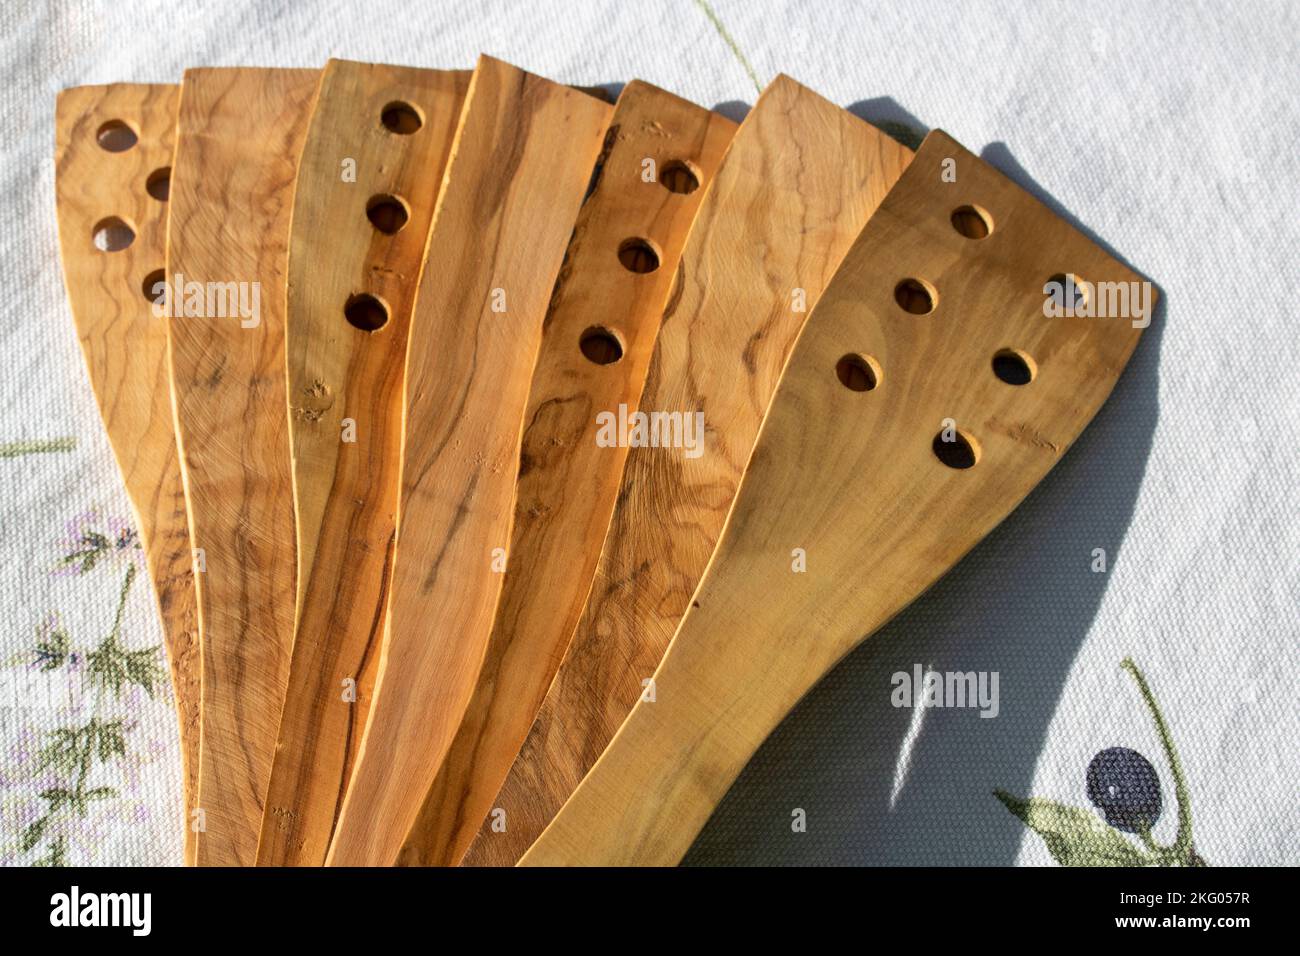 abanderado fuera de 8 espátulas de cocina del árbol de madera herramientas de la cocina Foto de stock